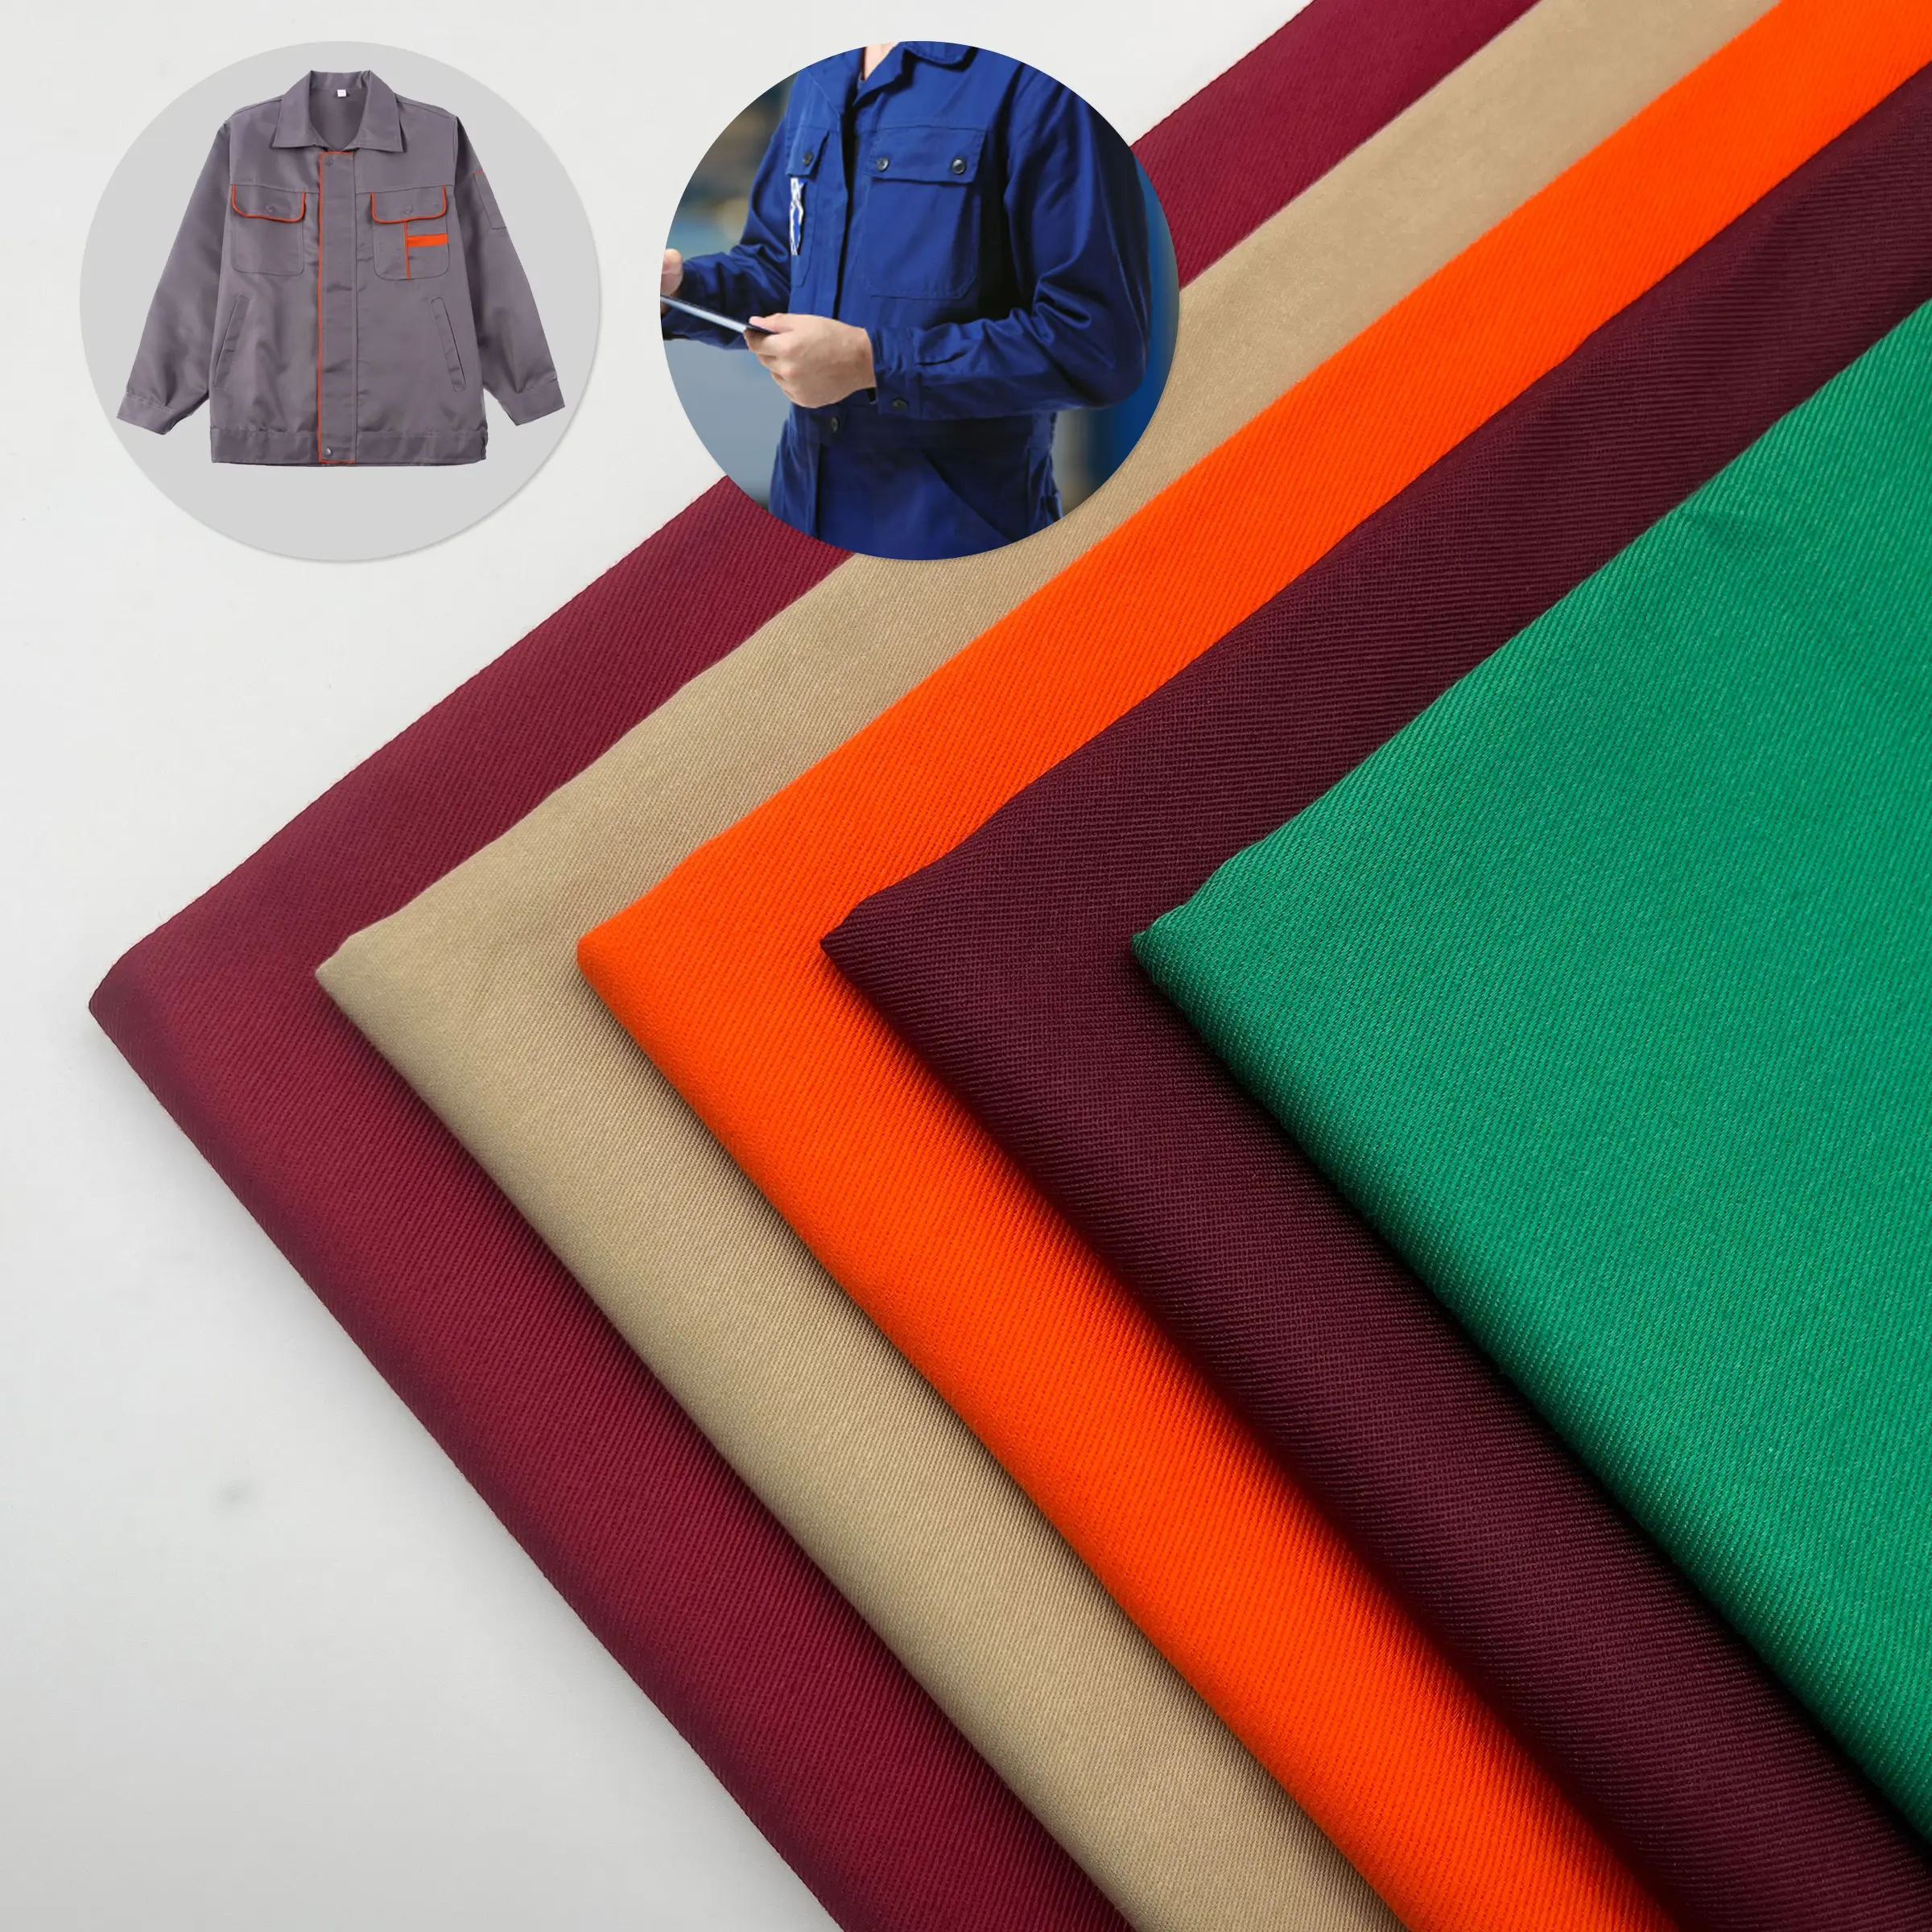 Gewebte Twill TC Poly cotton Industrie Arbeits kleidung Polyester/Baumwolle Textil stoffe für Bekleidungs hersteller Lieferanten Großhandel